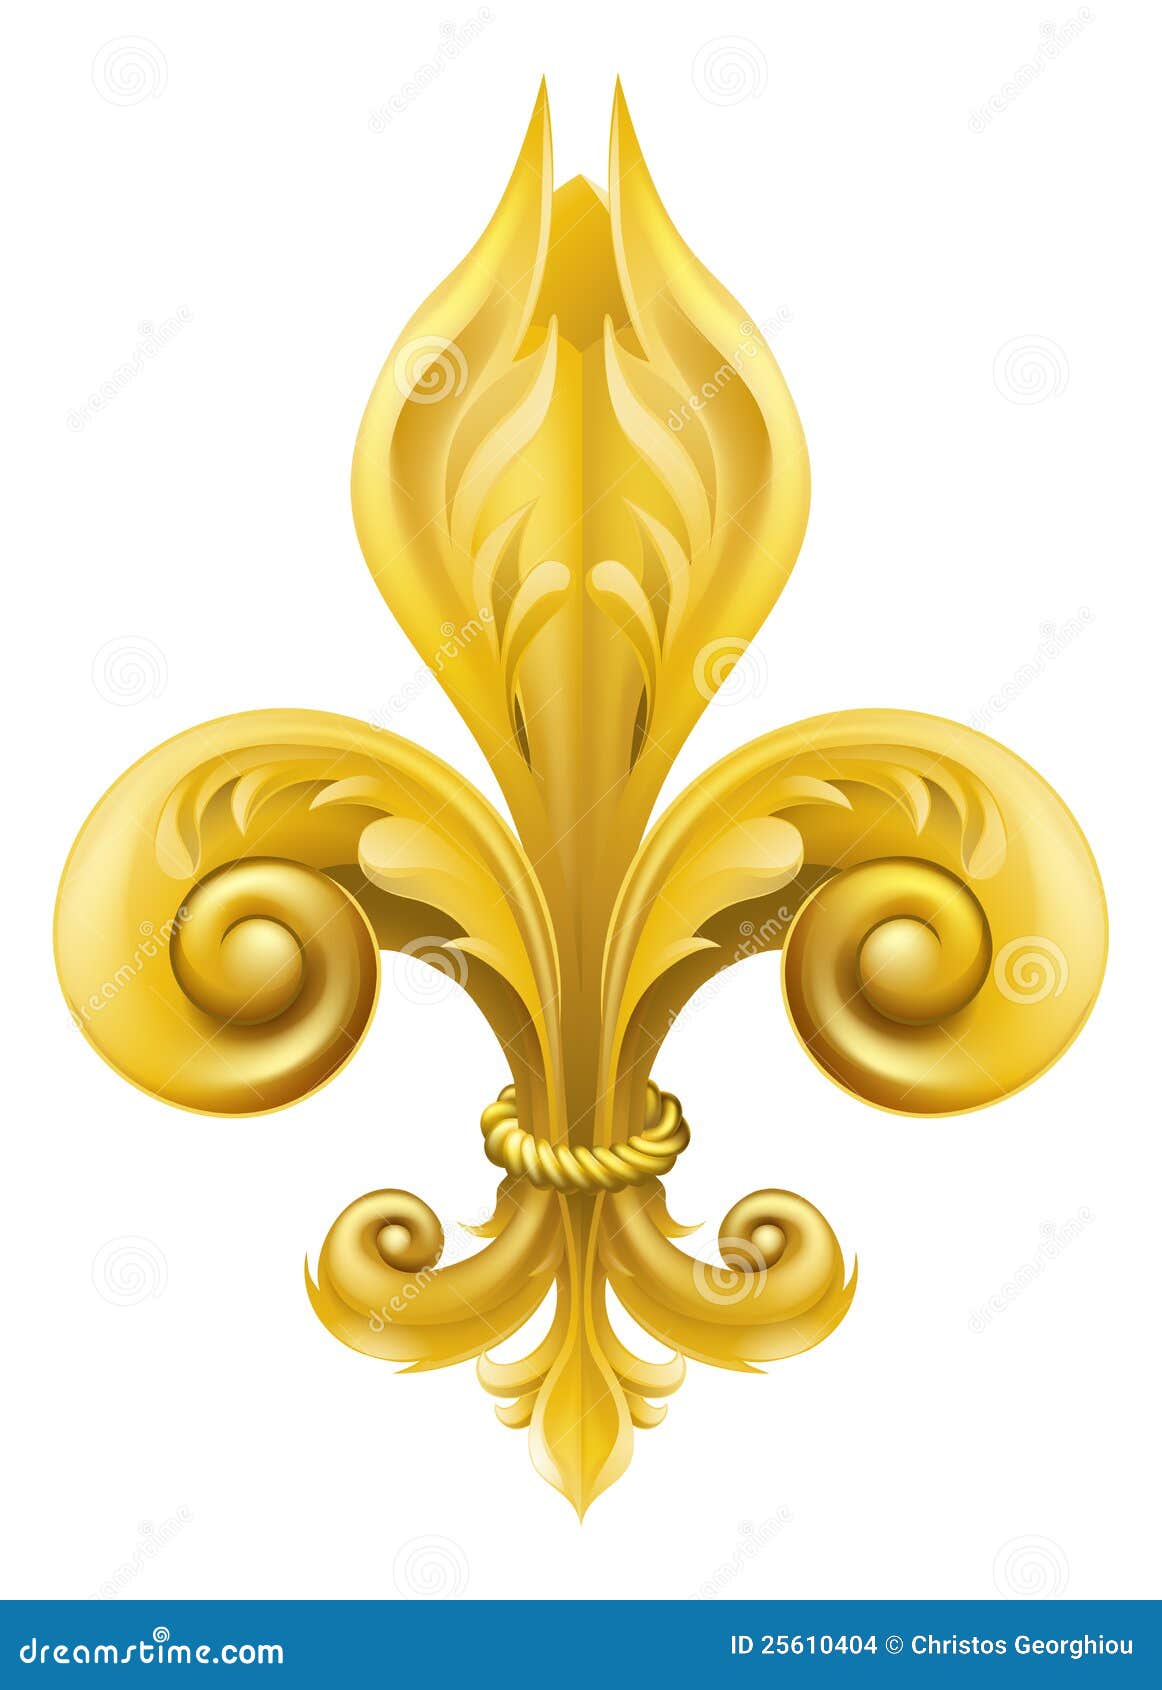 gold fleur-de-lis 